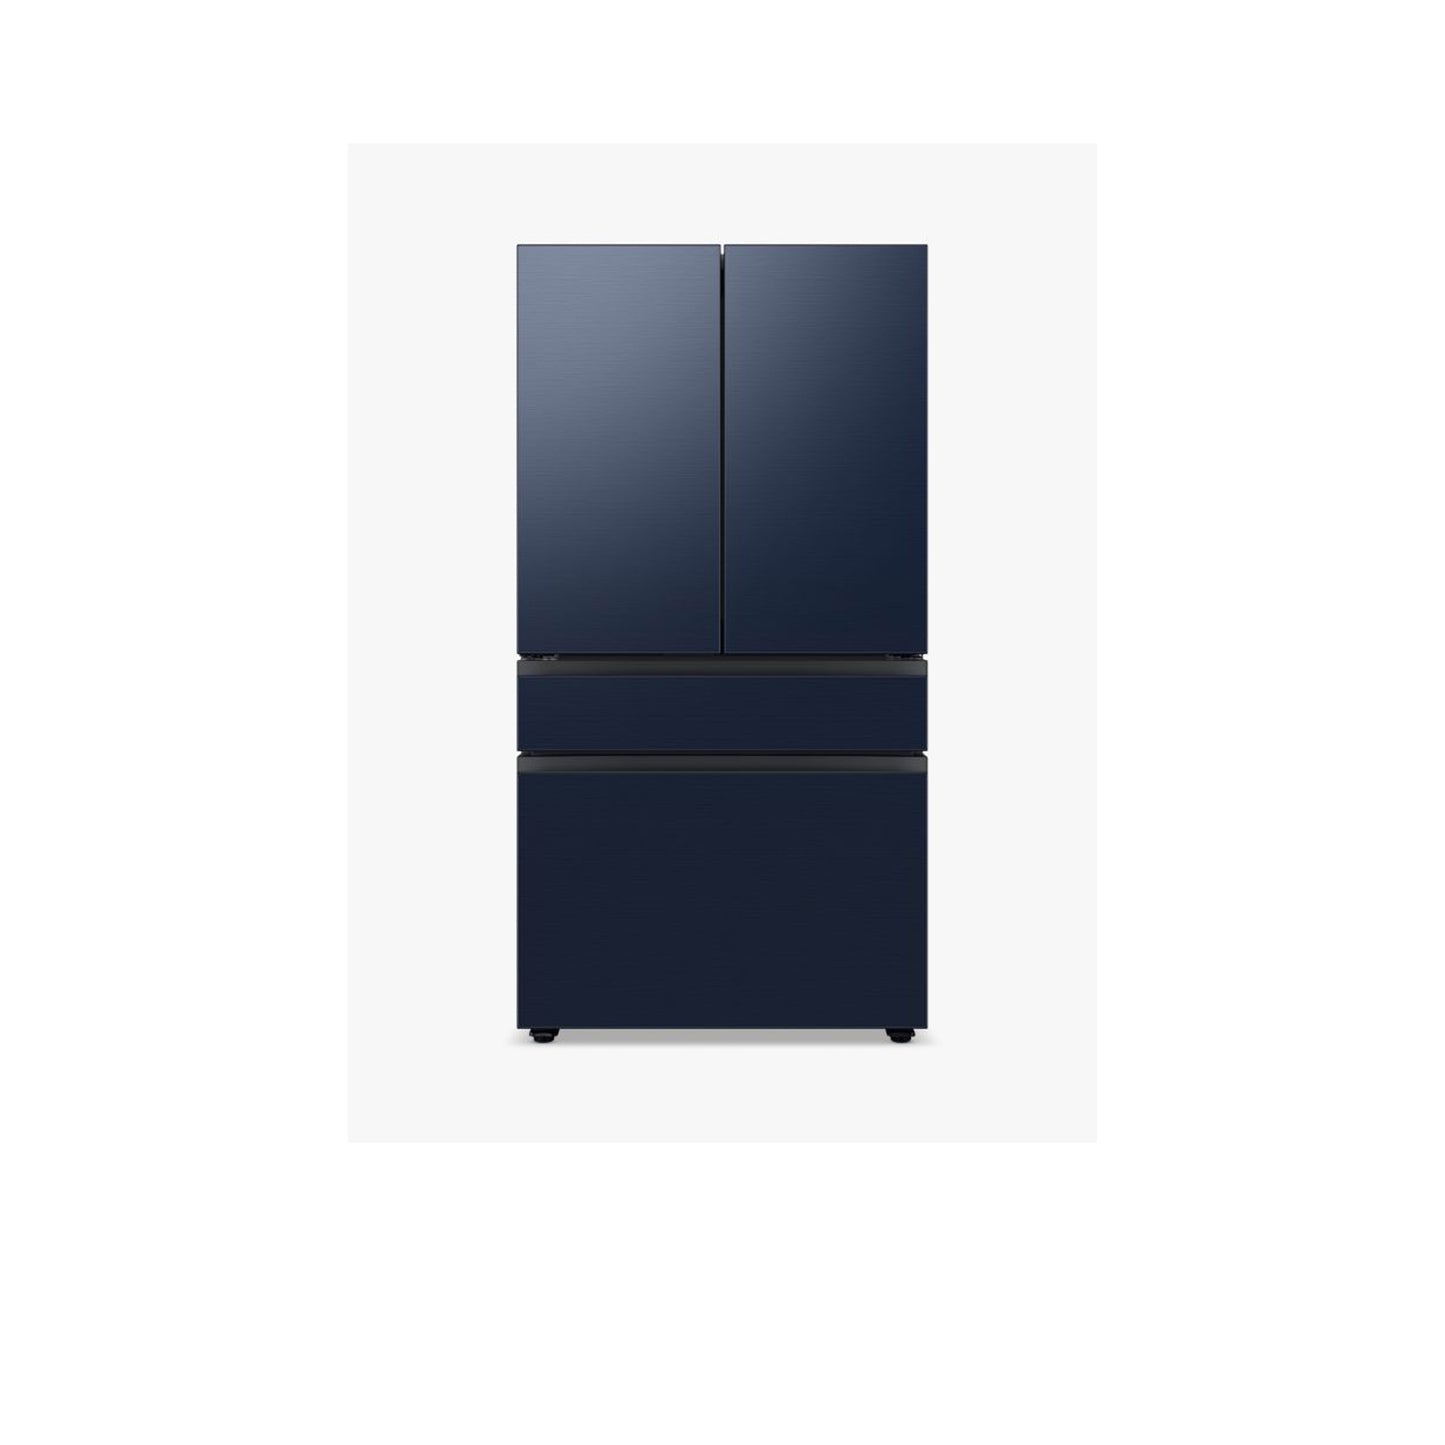 ثلاجة مخصصة بباب فرنسي بأربعة أبواب (23 قدمًا مكعبًا) مع ألواح علوية من الزجاج باللون الأزرق الصباحي وألواح وسطى وسفلية من الزجاج الأبيض.